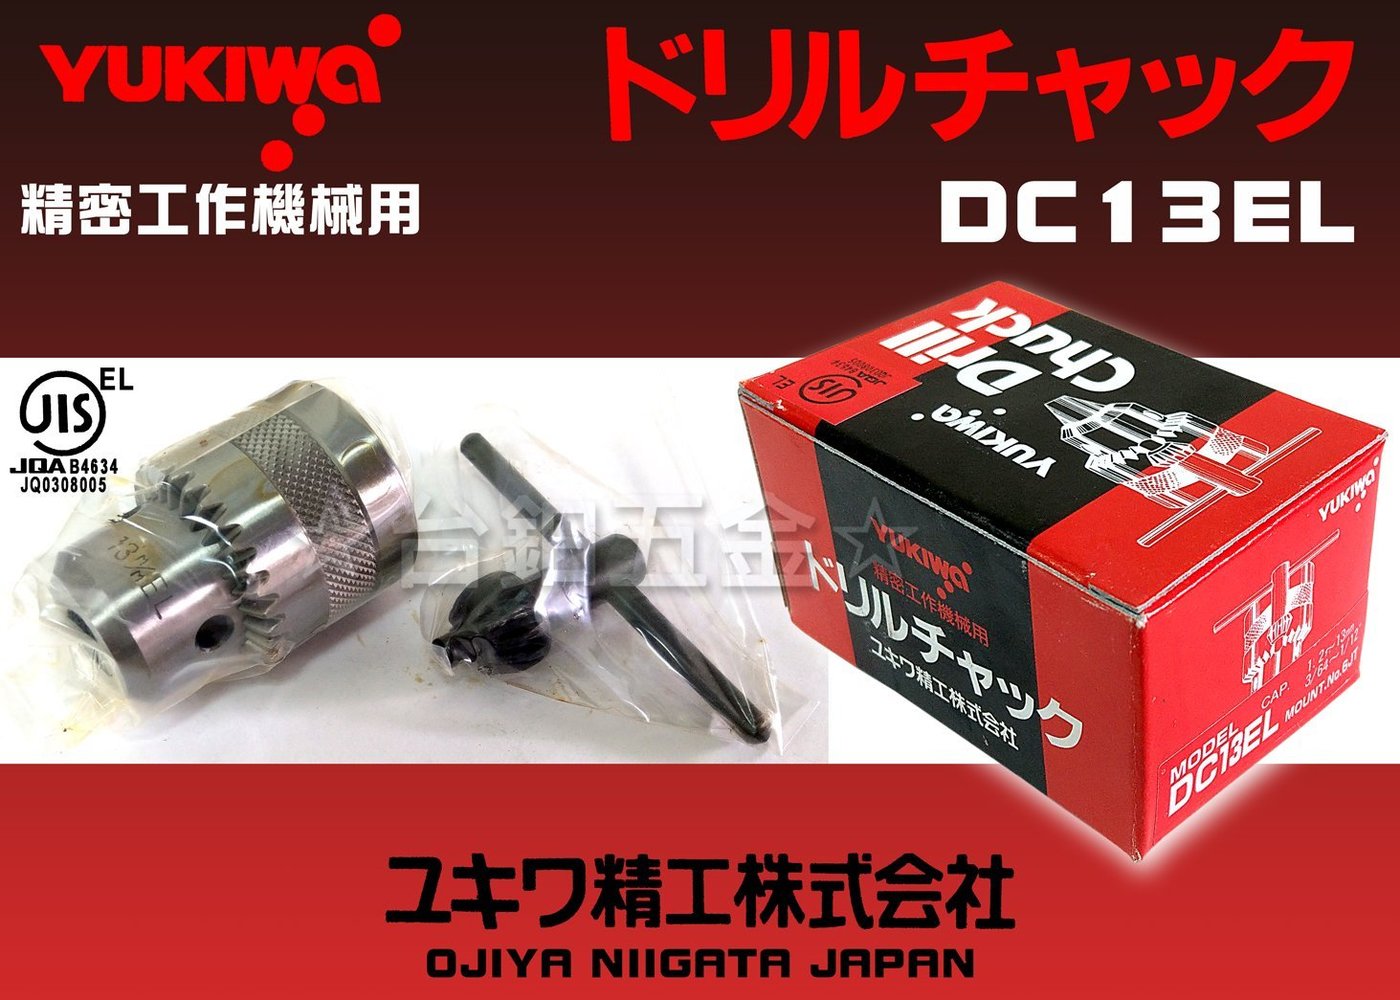 YUKIWA Drill Chucks DC13EL(小型) (鑽床用)鑽夾頭JT6 含稅價☆台鈤 